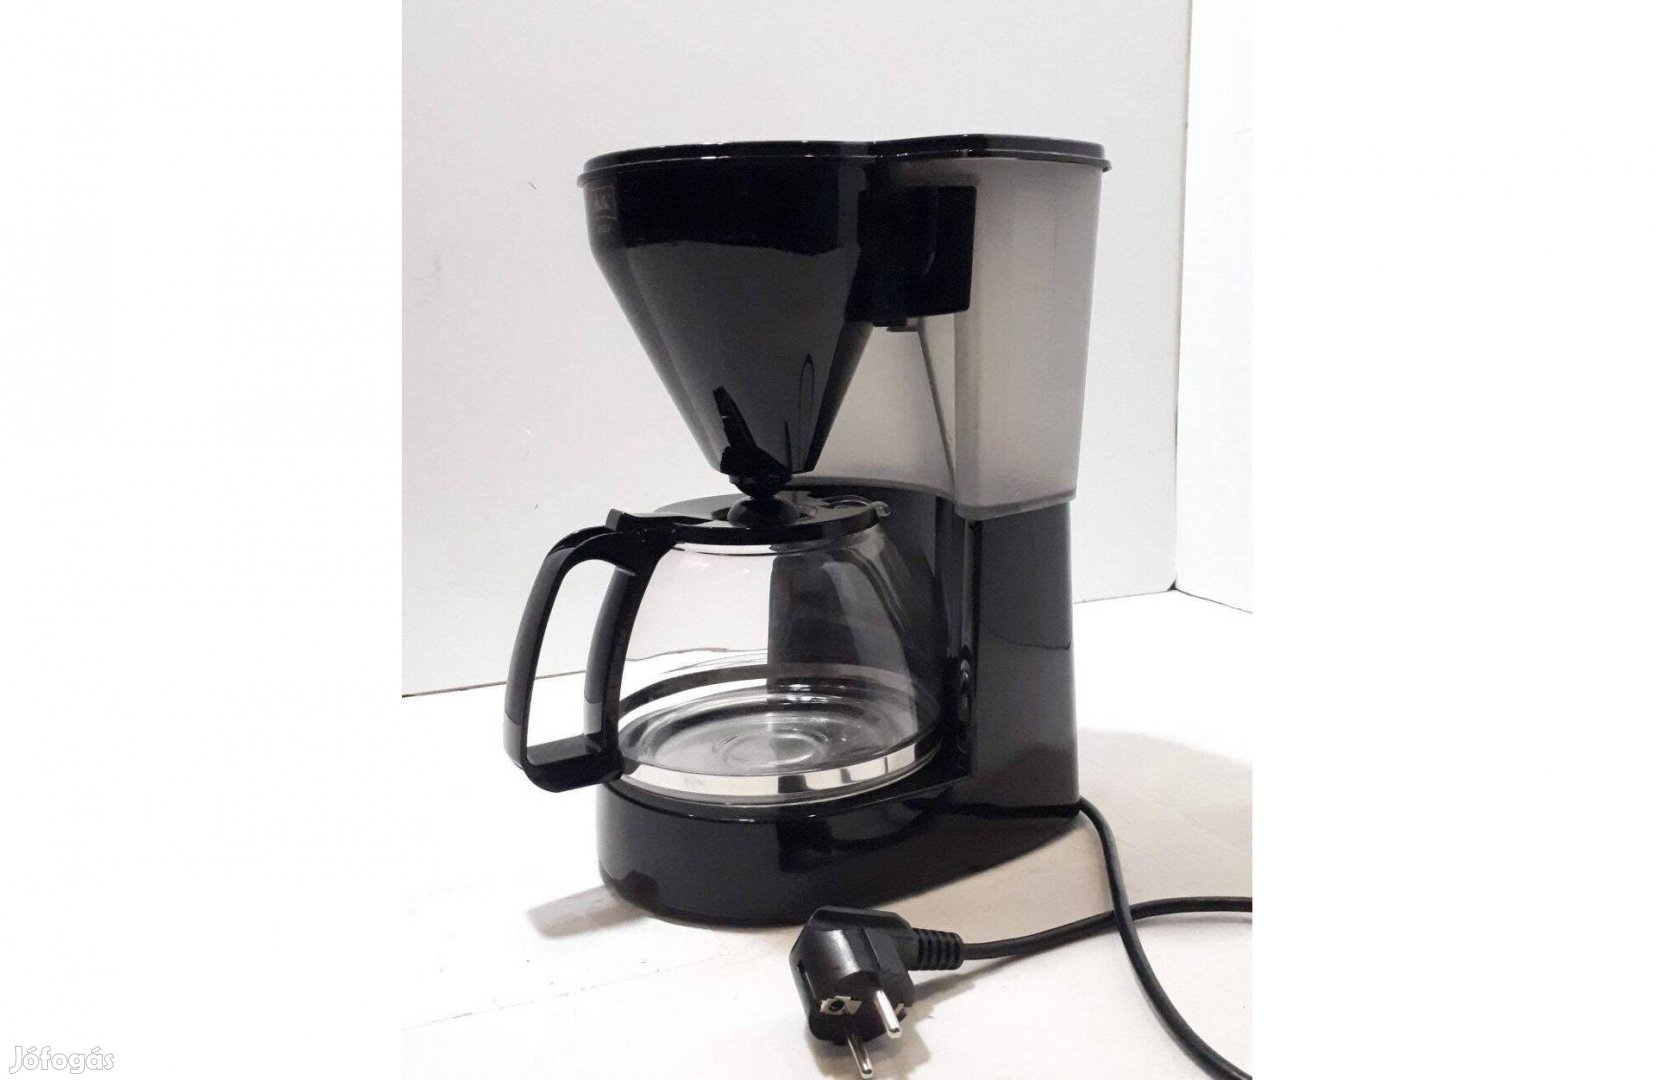 Melitta Easy Filter (1010-02) filteres kávéfőző üvegkannával, újszerű